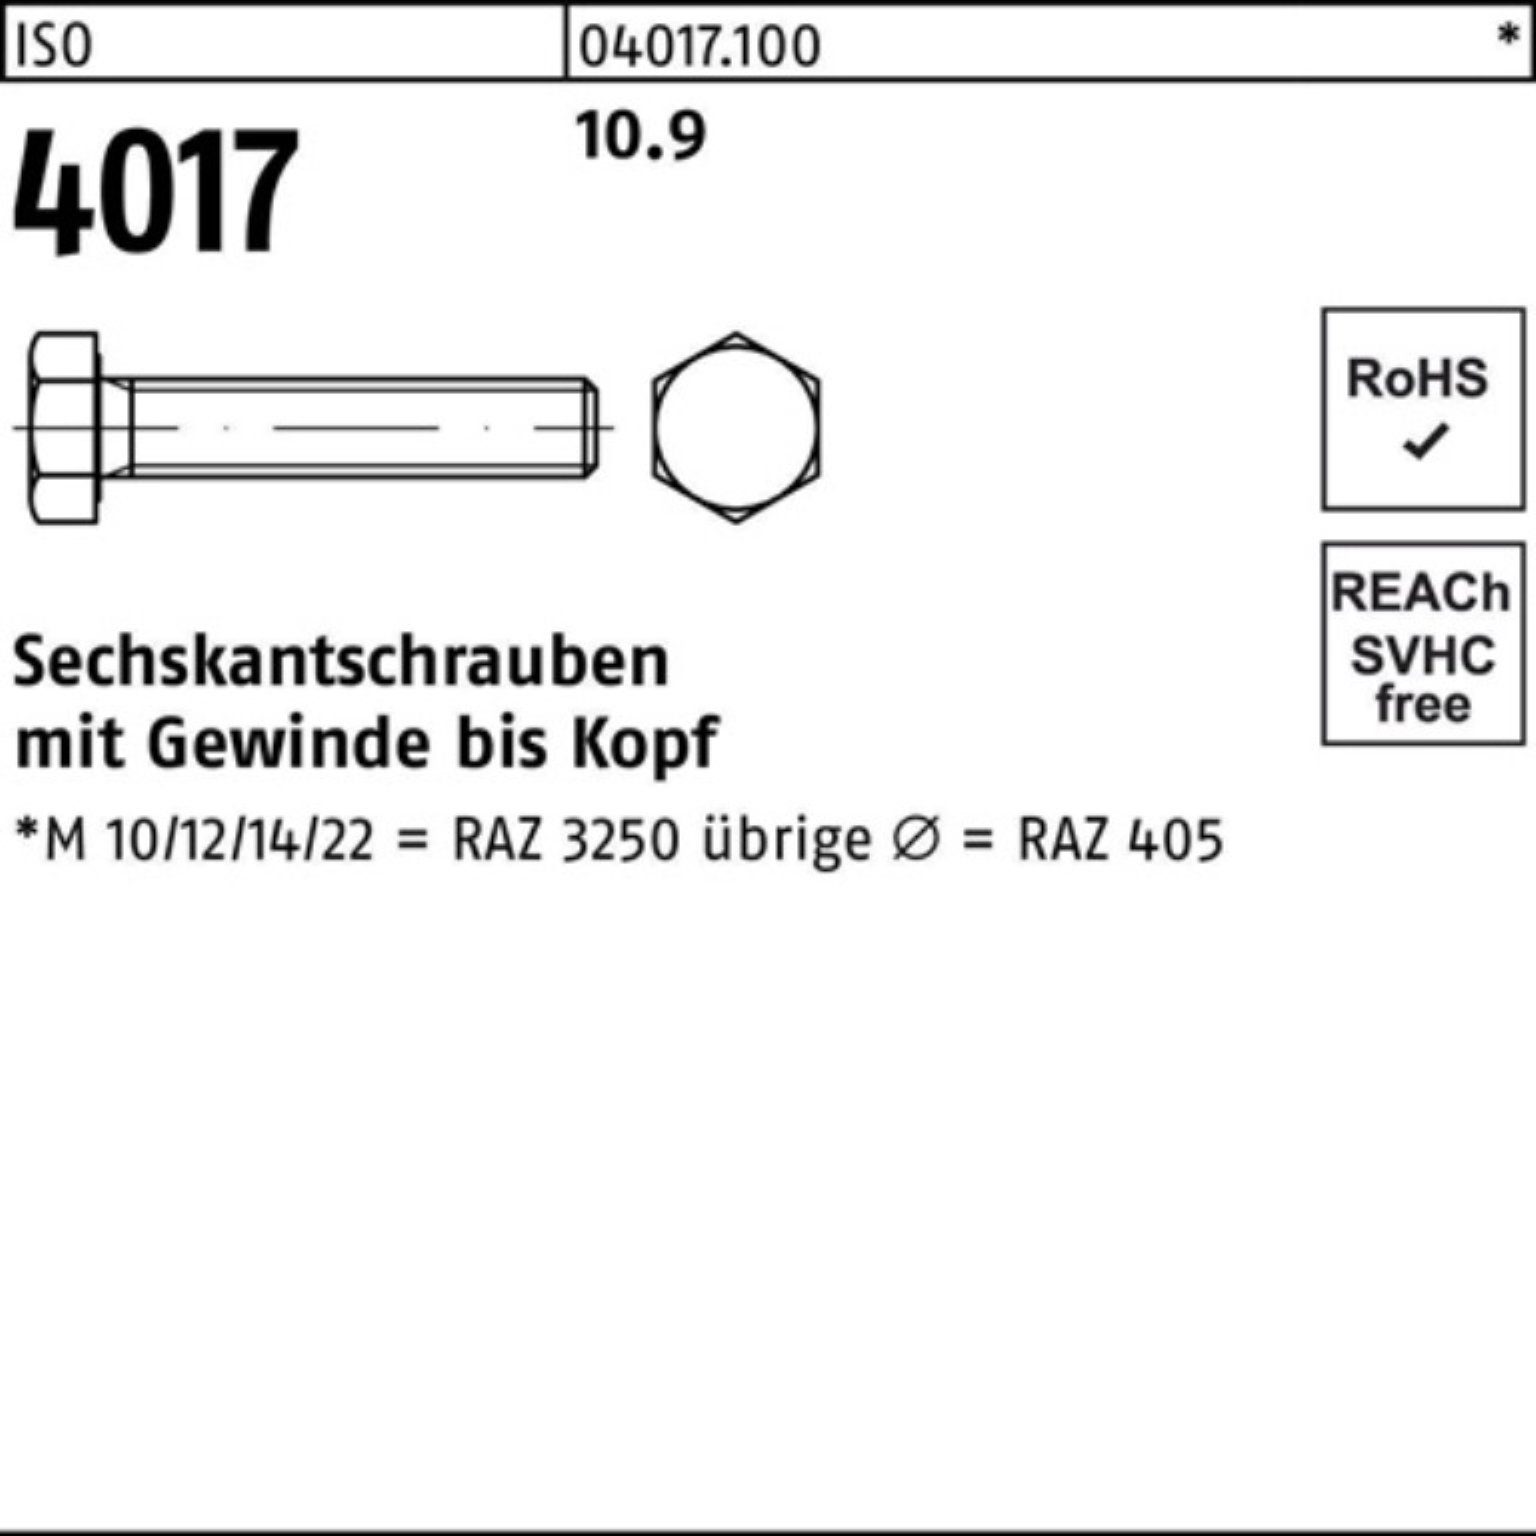 50 4017 ISO ISO 10.9 Sechskantschraube Stück Bufab 100 Pack 4 M10x 100er VG Sechskantschraube